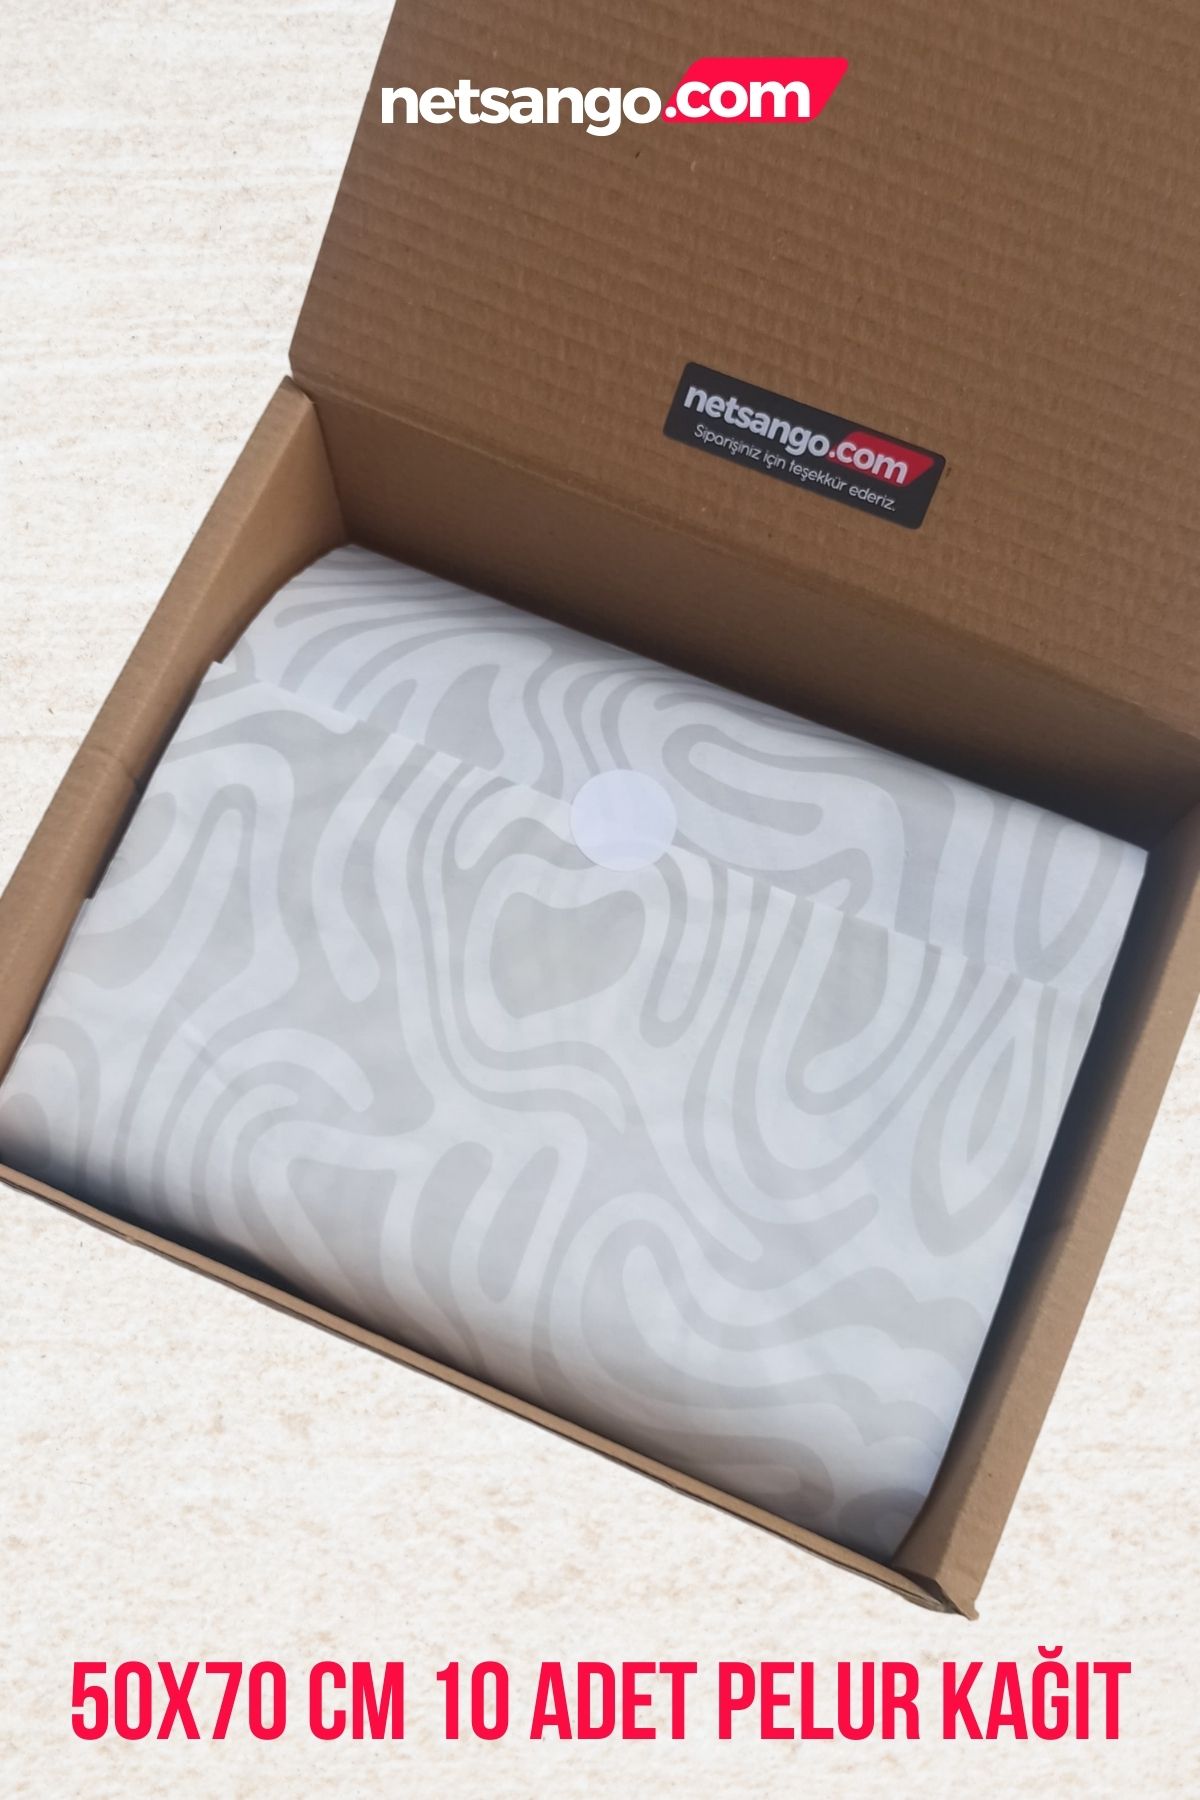 Netsan Etiket Zebra Desenli 50x70cm 10 Adet Pelur Kağıdı